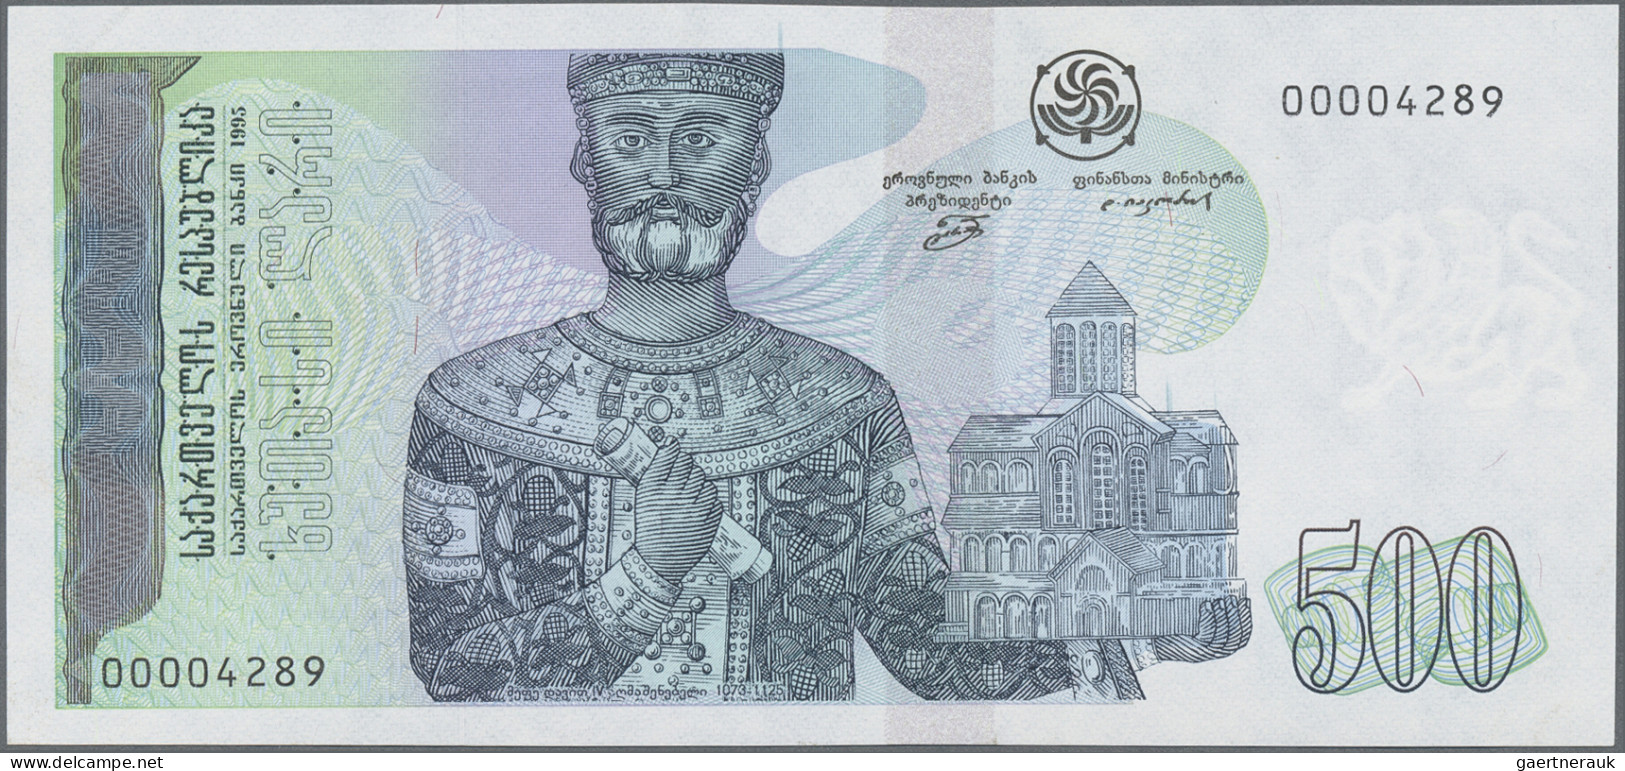 Georgia: Georgian National Bank, 500 Lari 1995, With Low Serial # 00004289, P.60 - Georgien